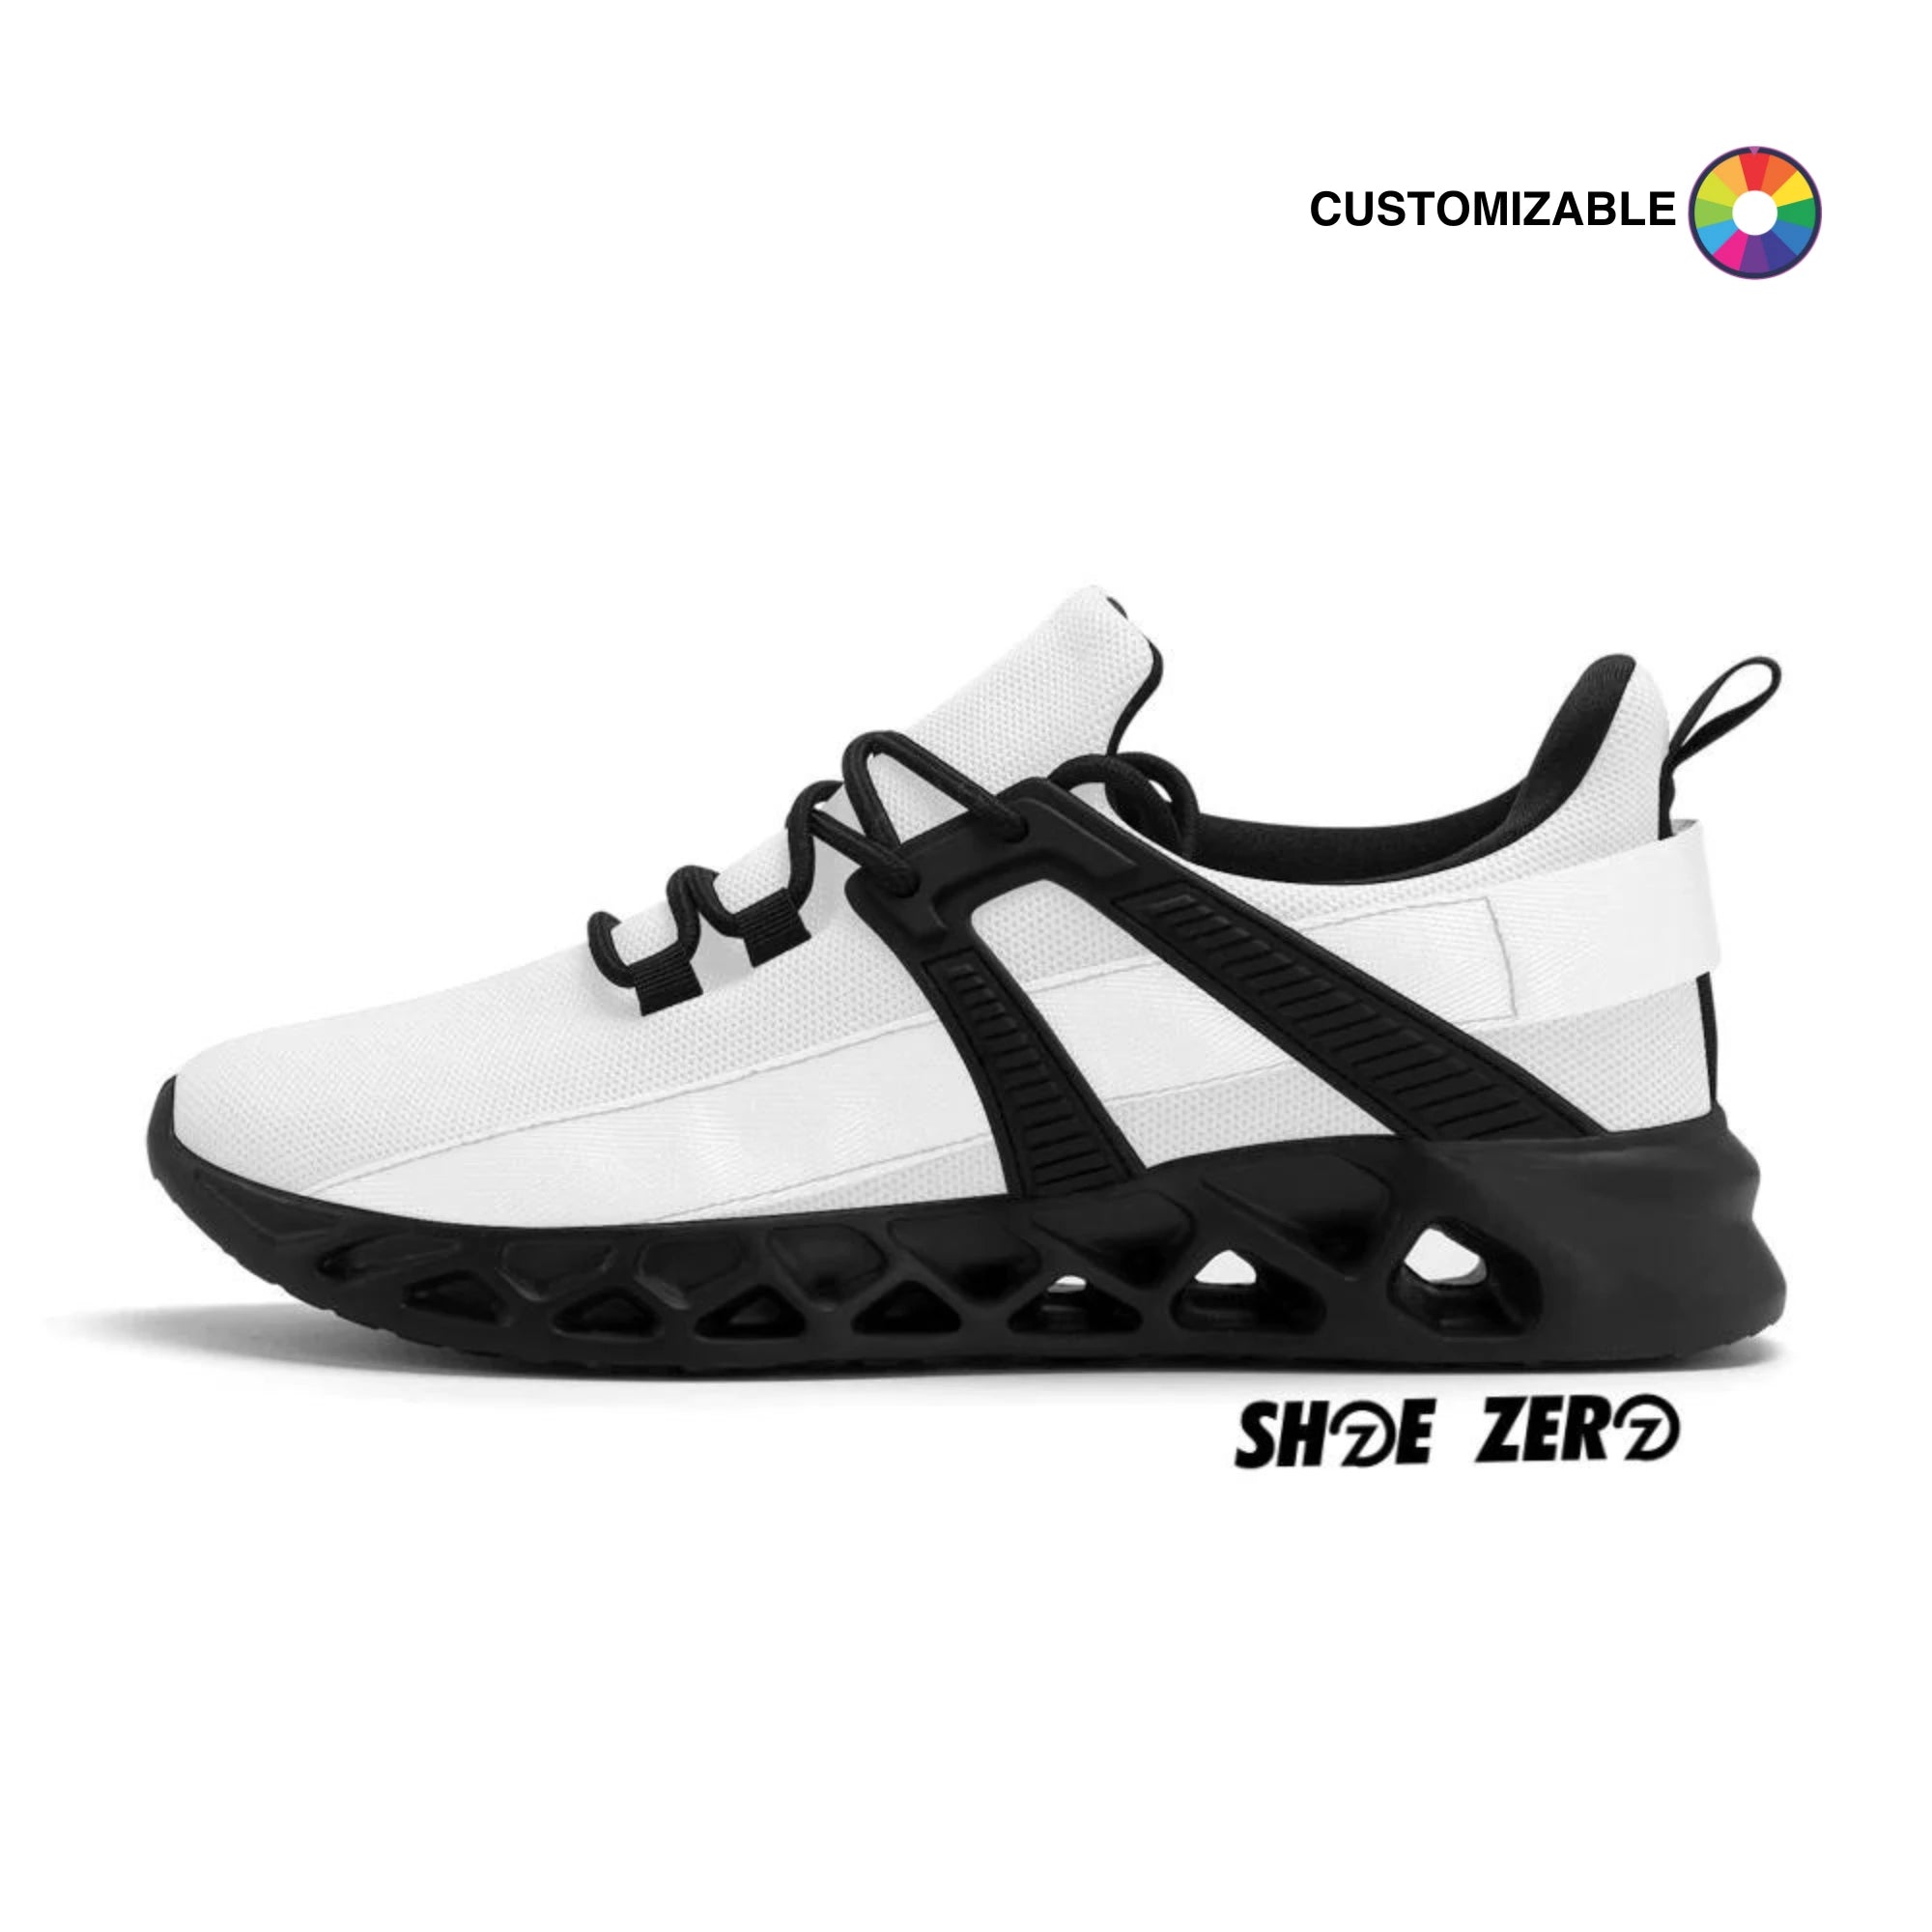 Customizable New Elastic Sport Sneakers | Design your own Low Top | Shoe Zero